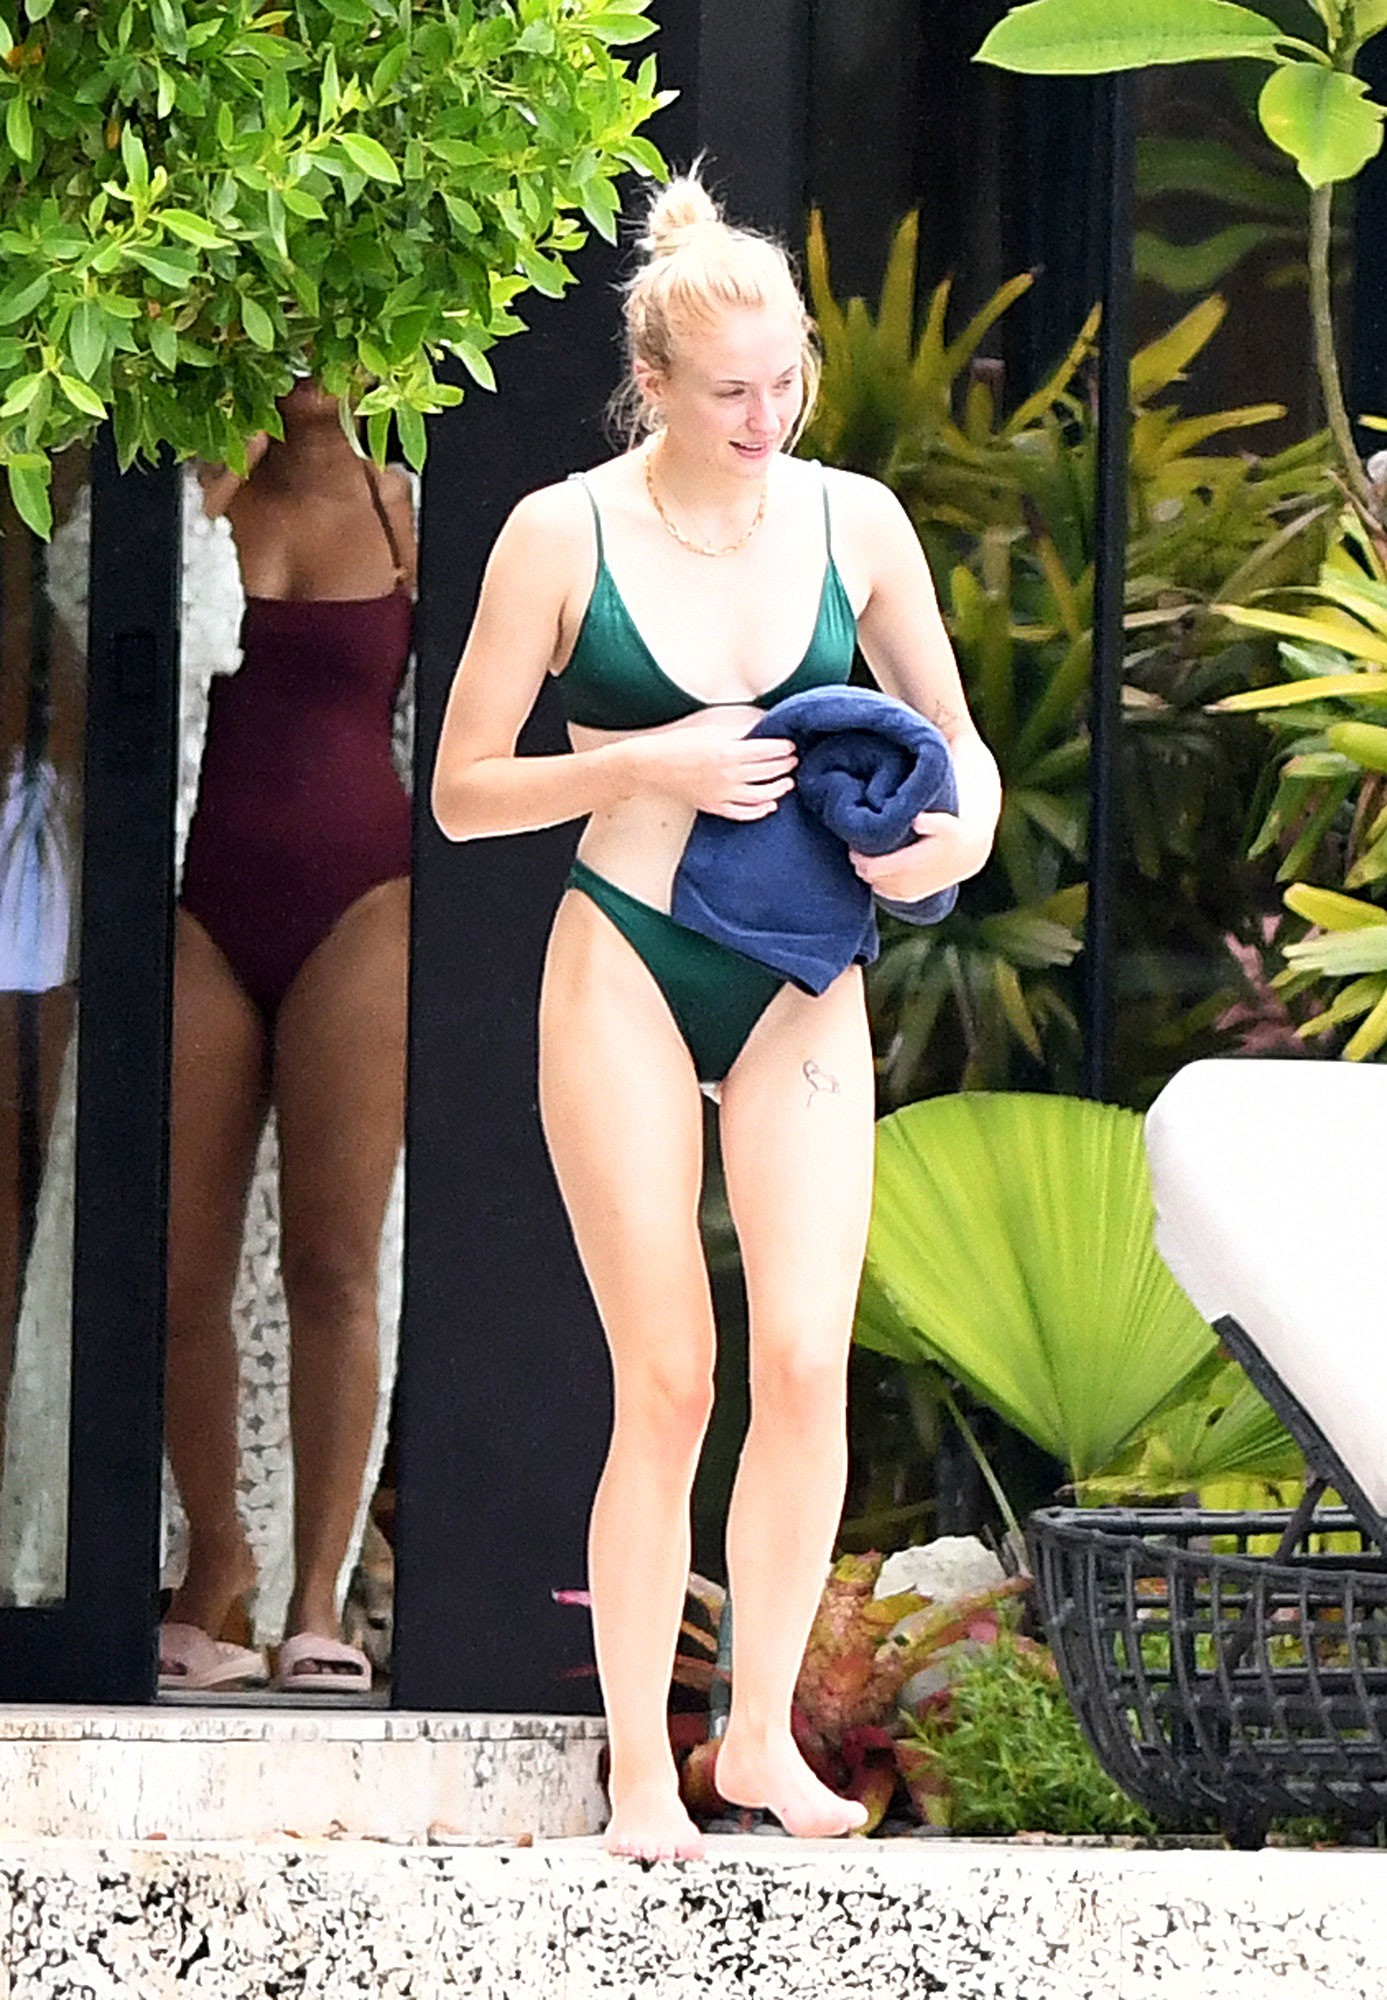 Med henne smal kropp och Röd hårtyp utan behå (kupstorlek 32B) på stranden i bikini
